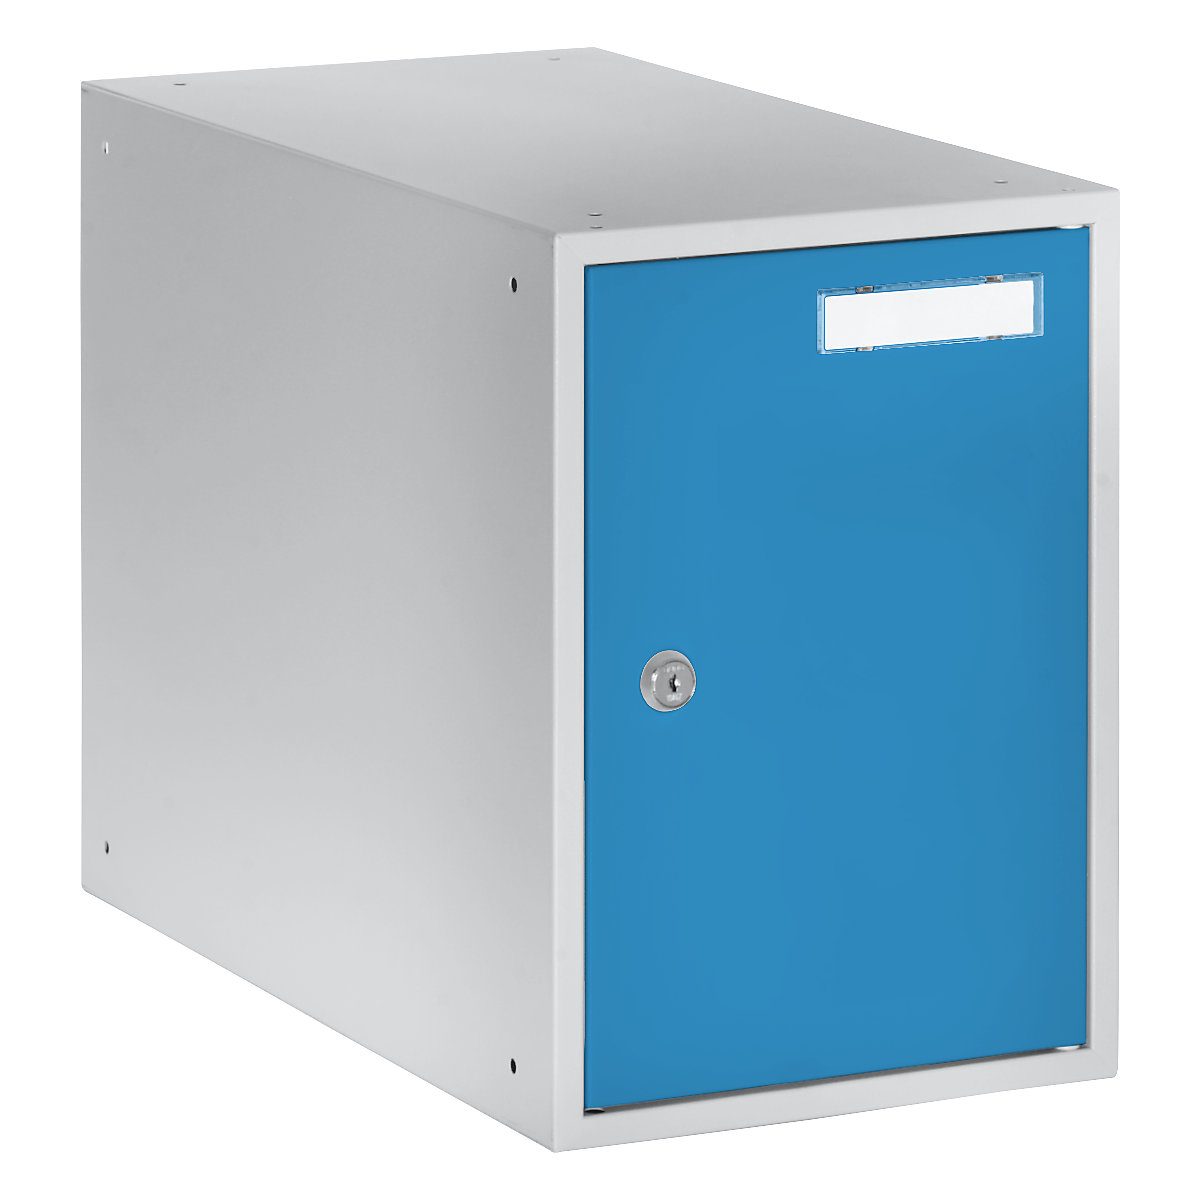 EUROKRAFTbasic – Casier verrouillable, h x l x p 350 x 250 x 450 mm, corps gris clair / portes bleu clair